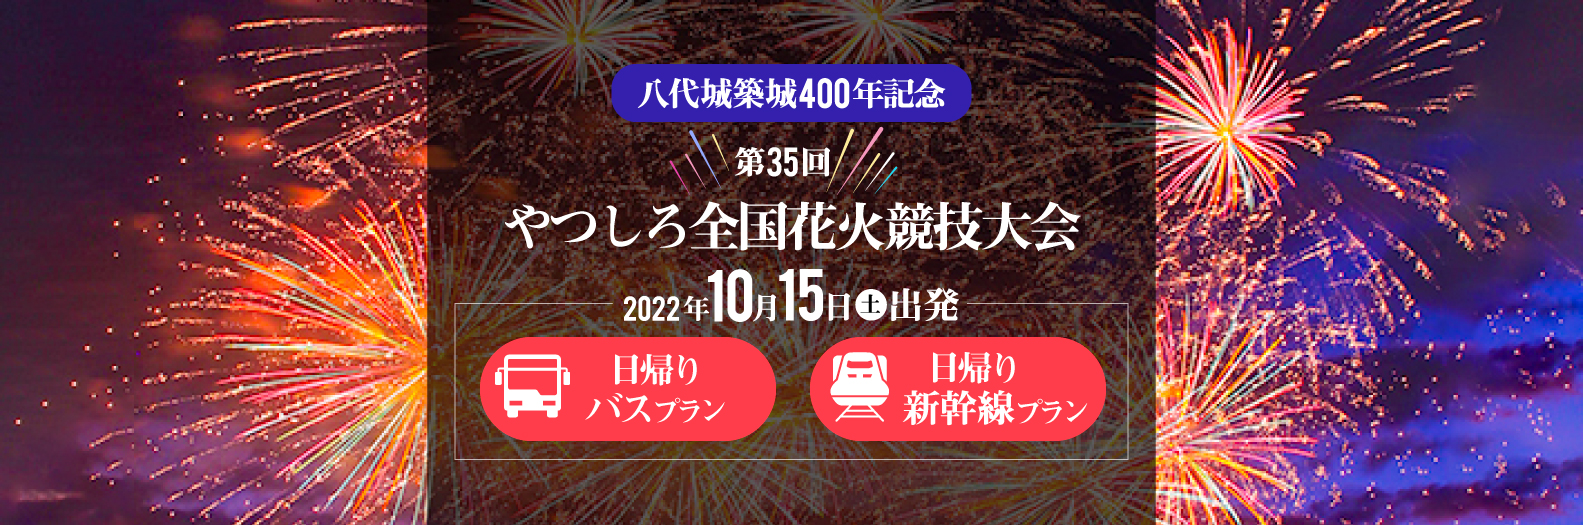 やつしろ全国花火競技大会ツアー2022 日帰りバスツアー・新幹線プラン